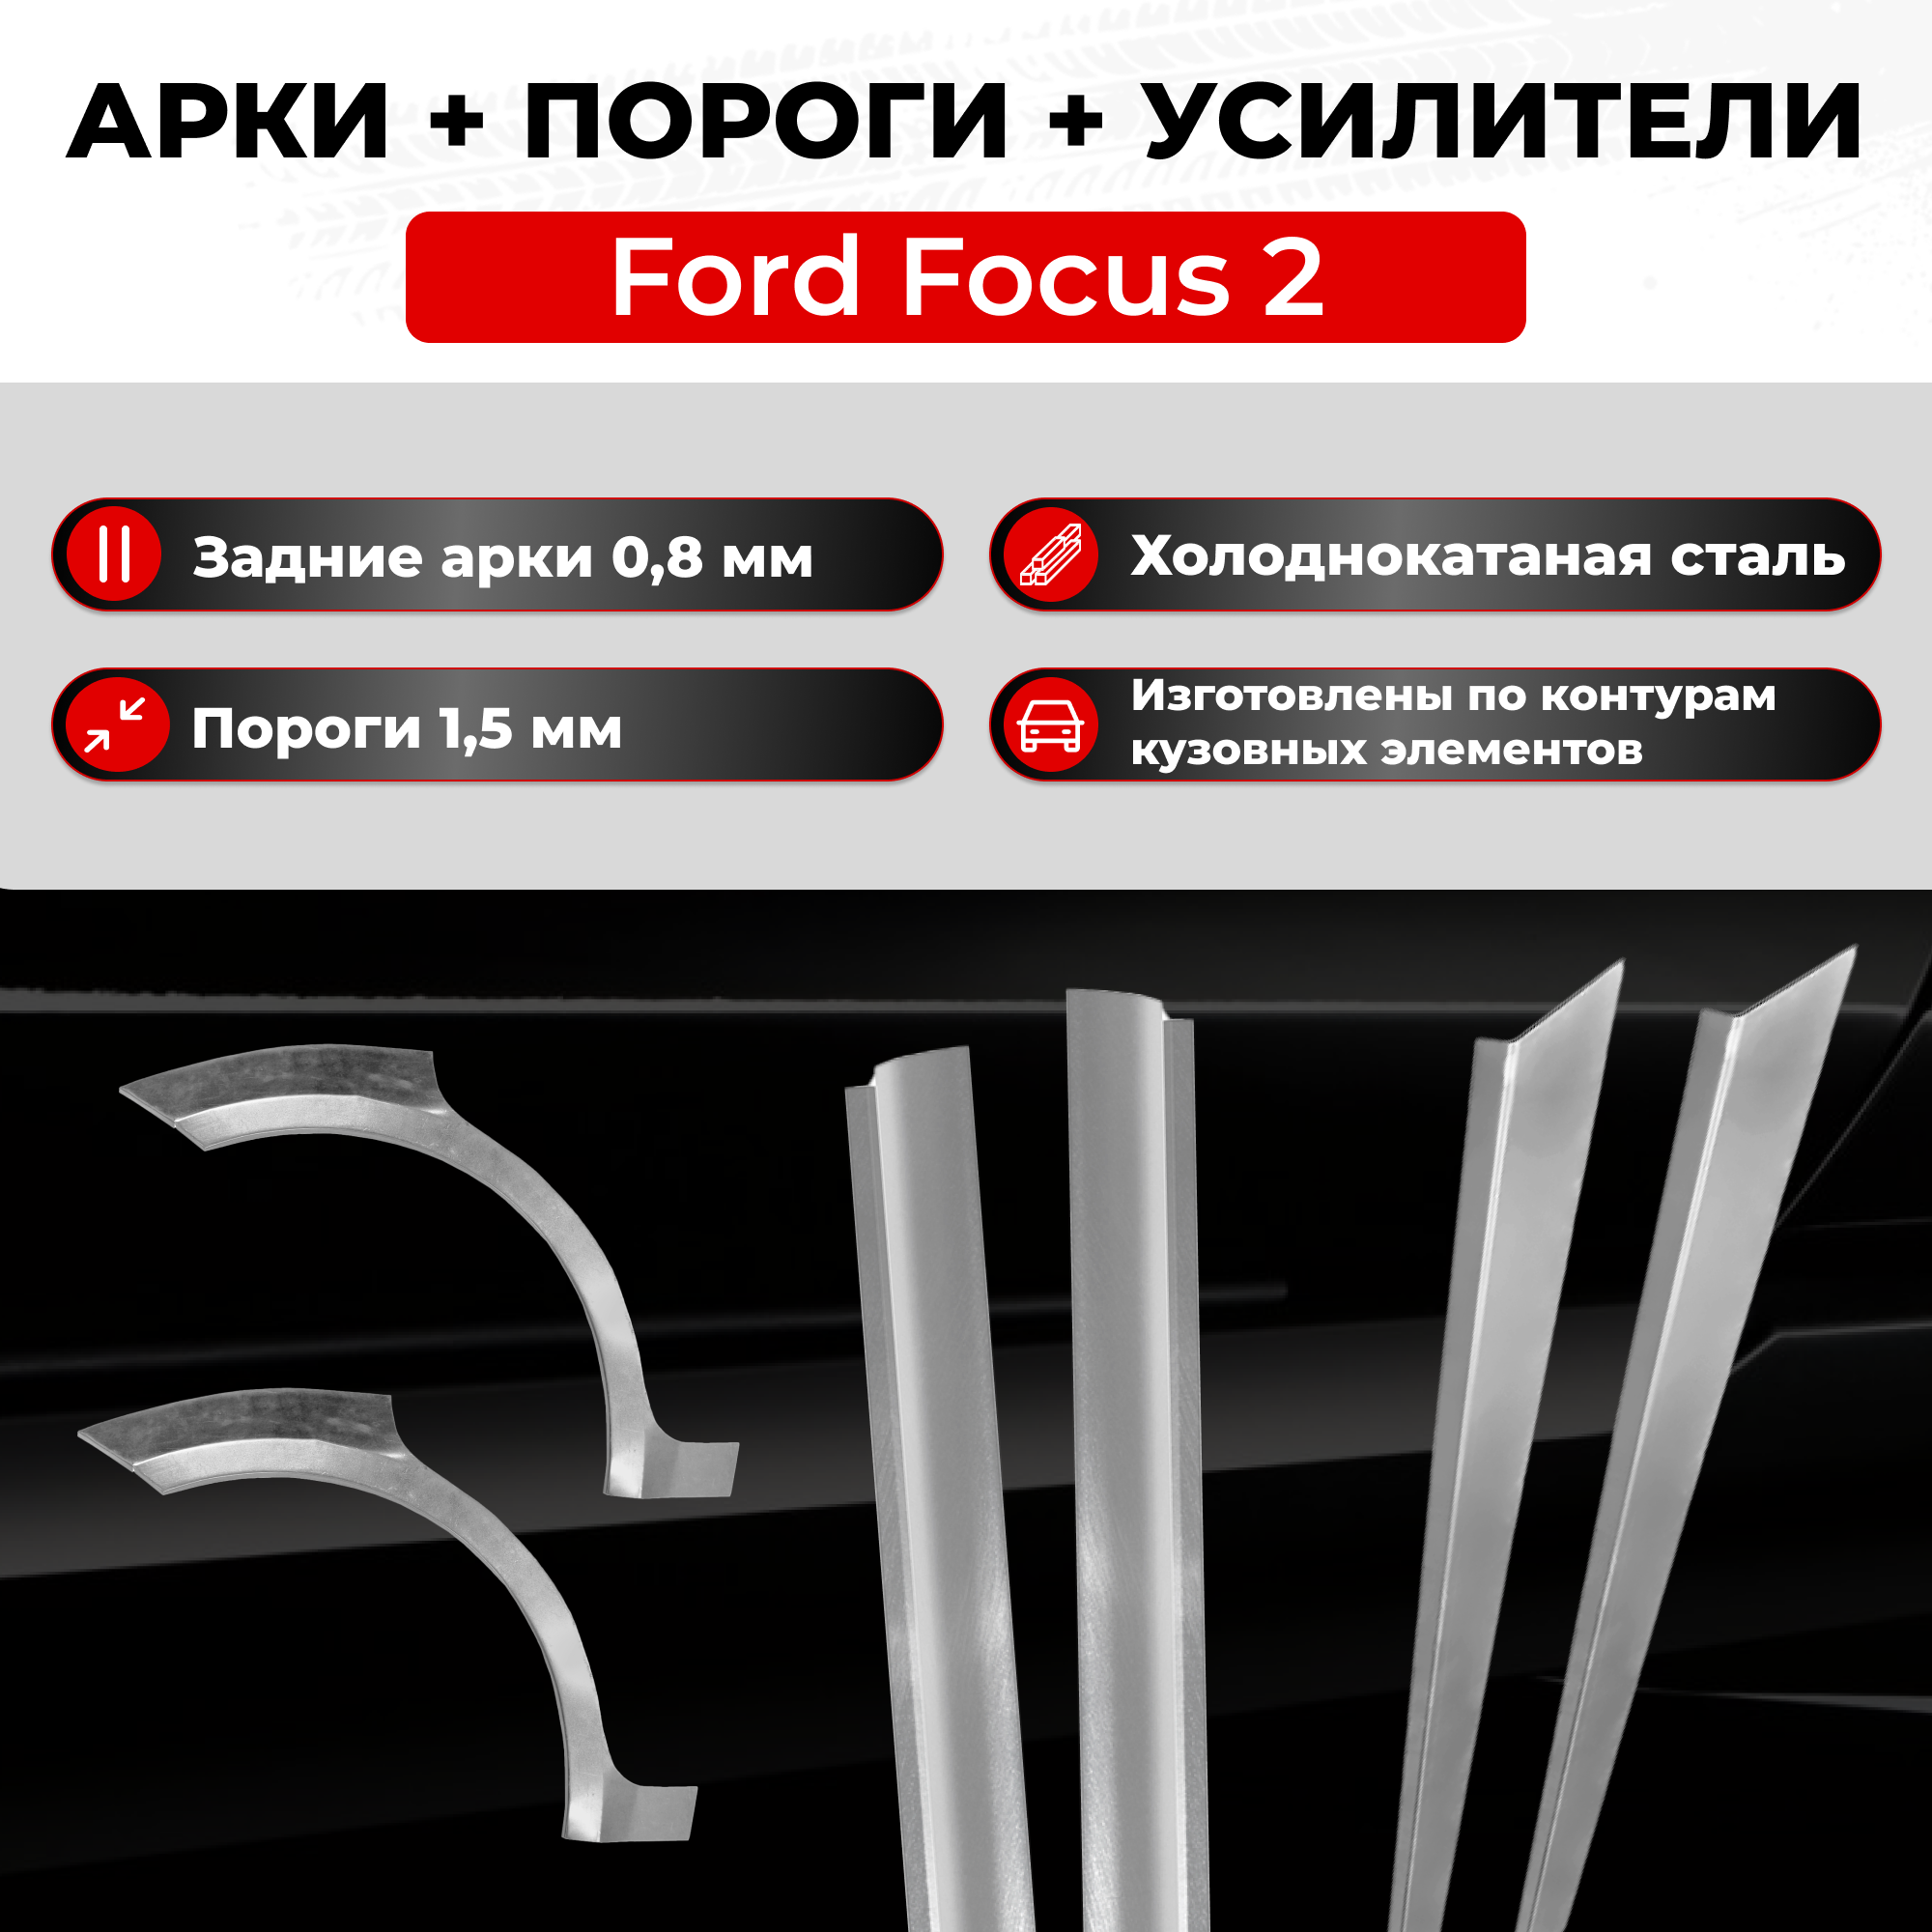 Ремонтные задние арки и полупороги + усилители (комплект) на Ford Focus 2 2005-2011 седан (Форд Фокус 2) холоднокатаная сталь 0.8 мм и 1.5 мм